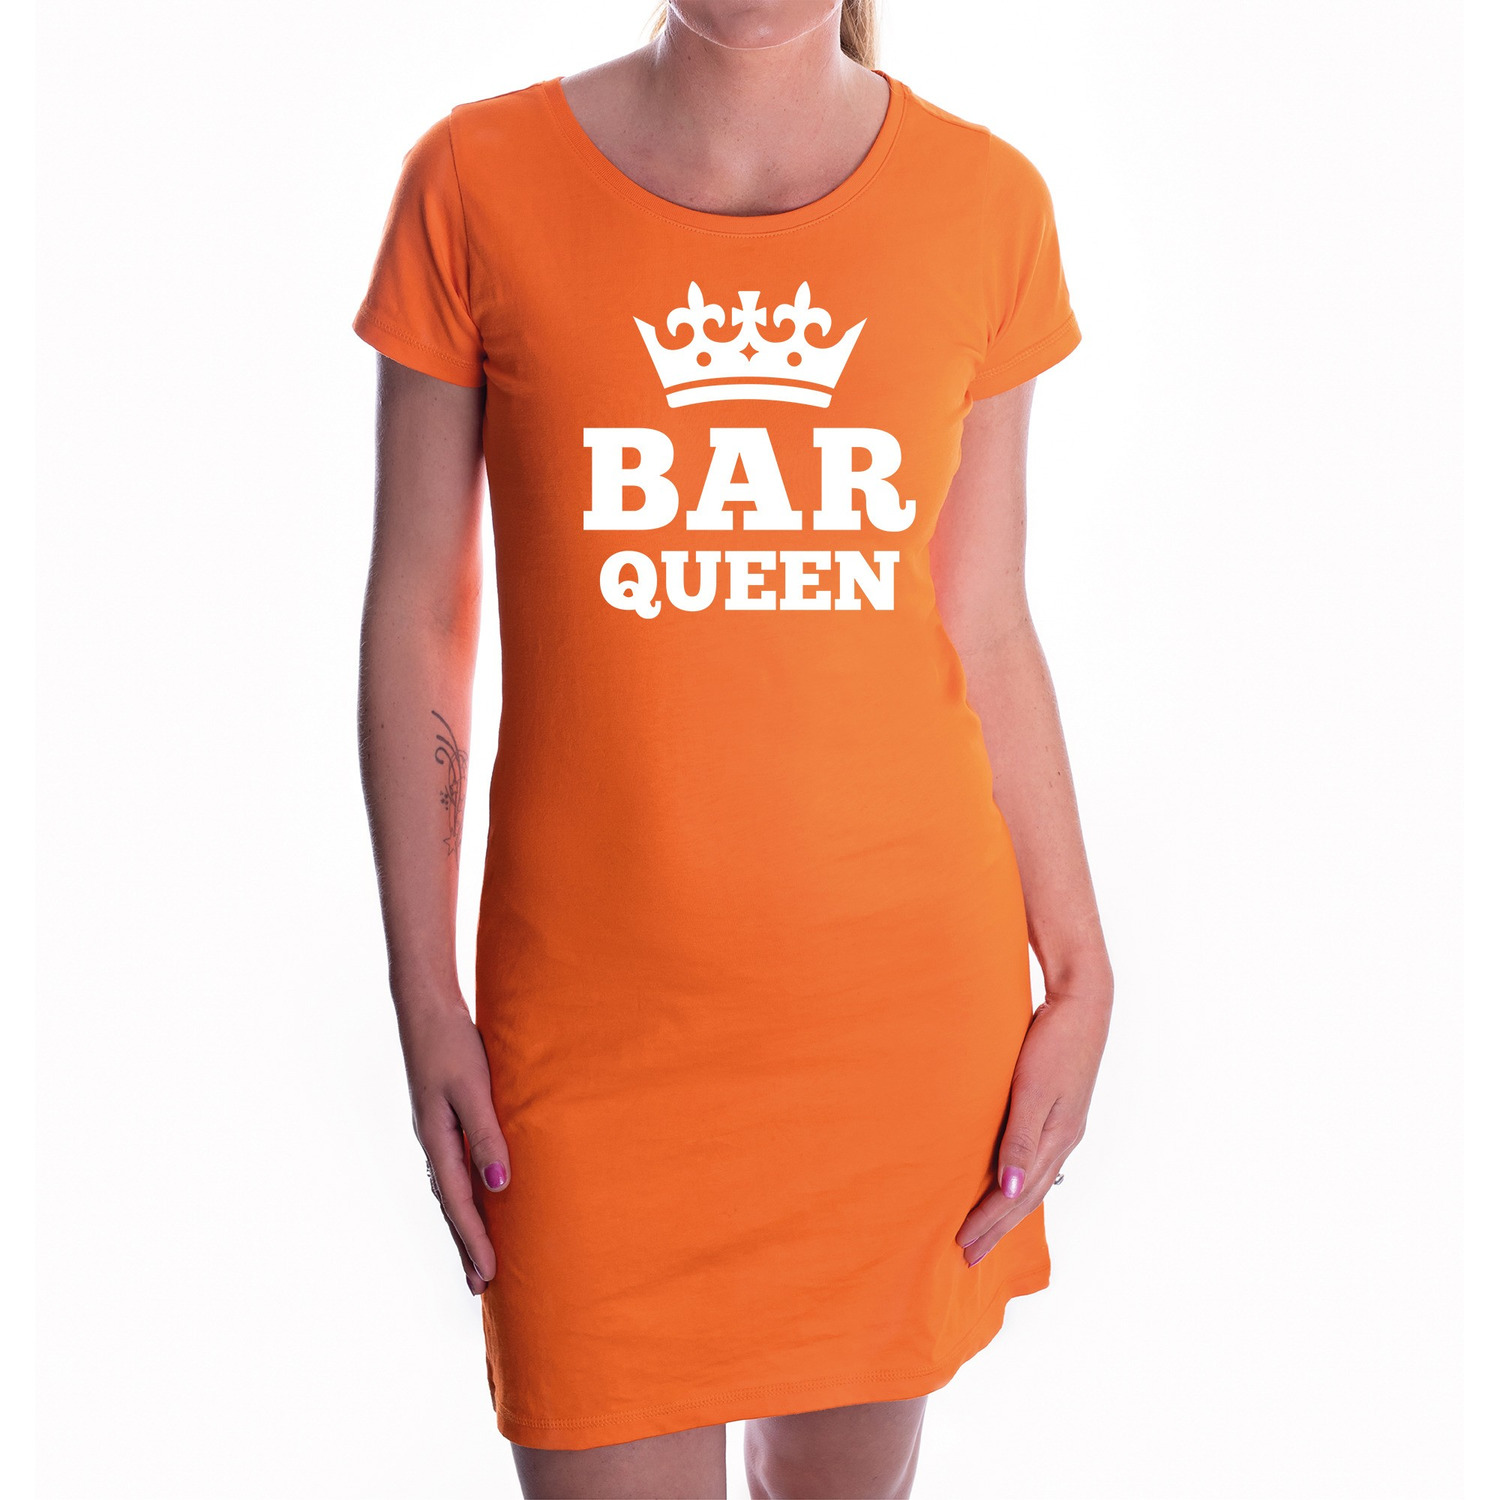 Koningsdag jurk oranje Bar queen met kroon voor dames